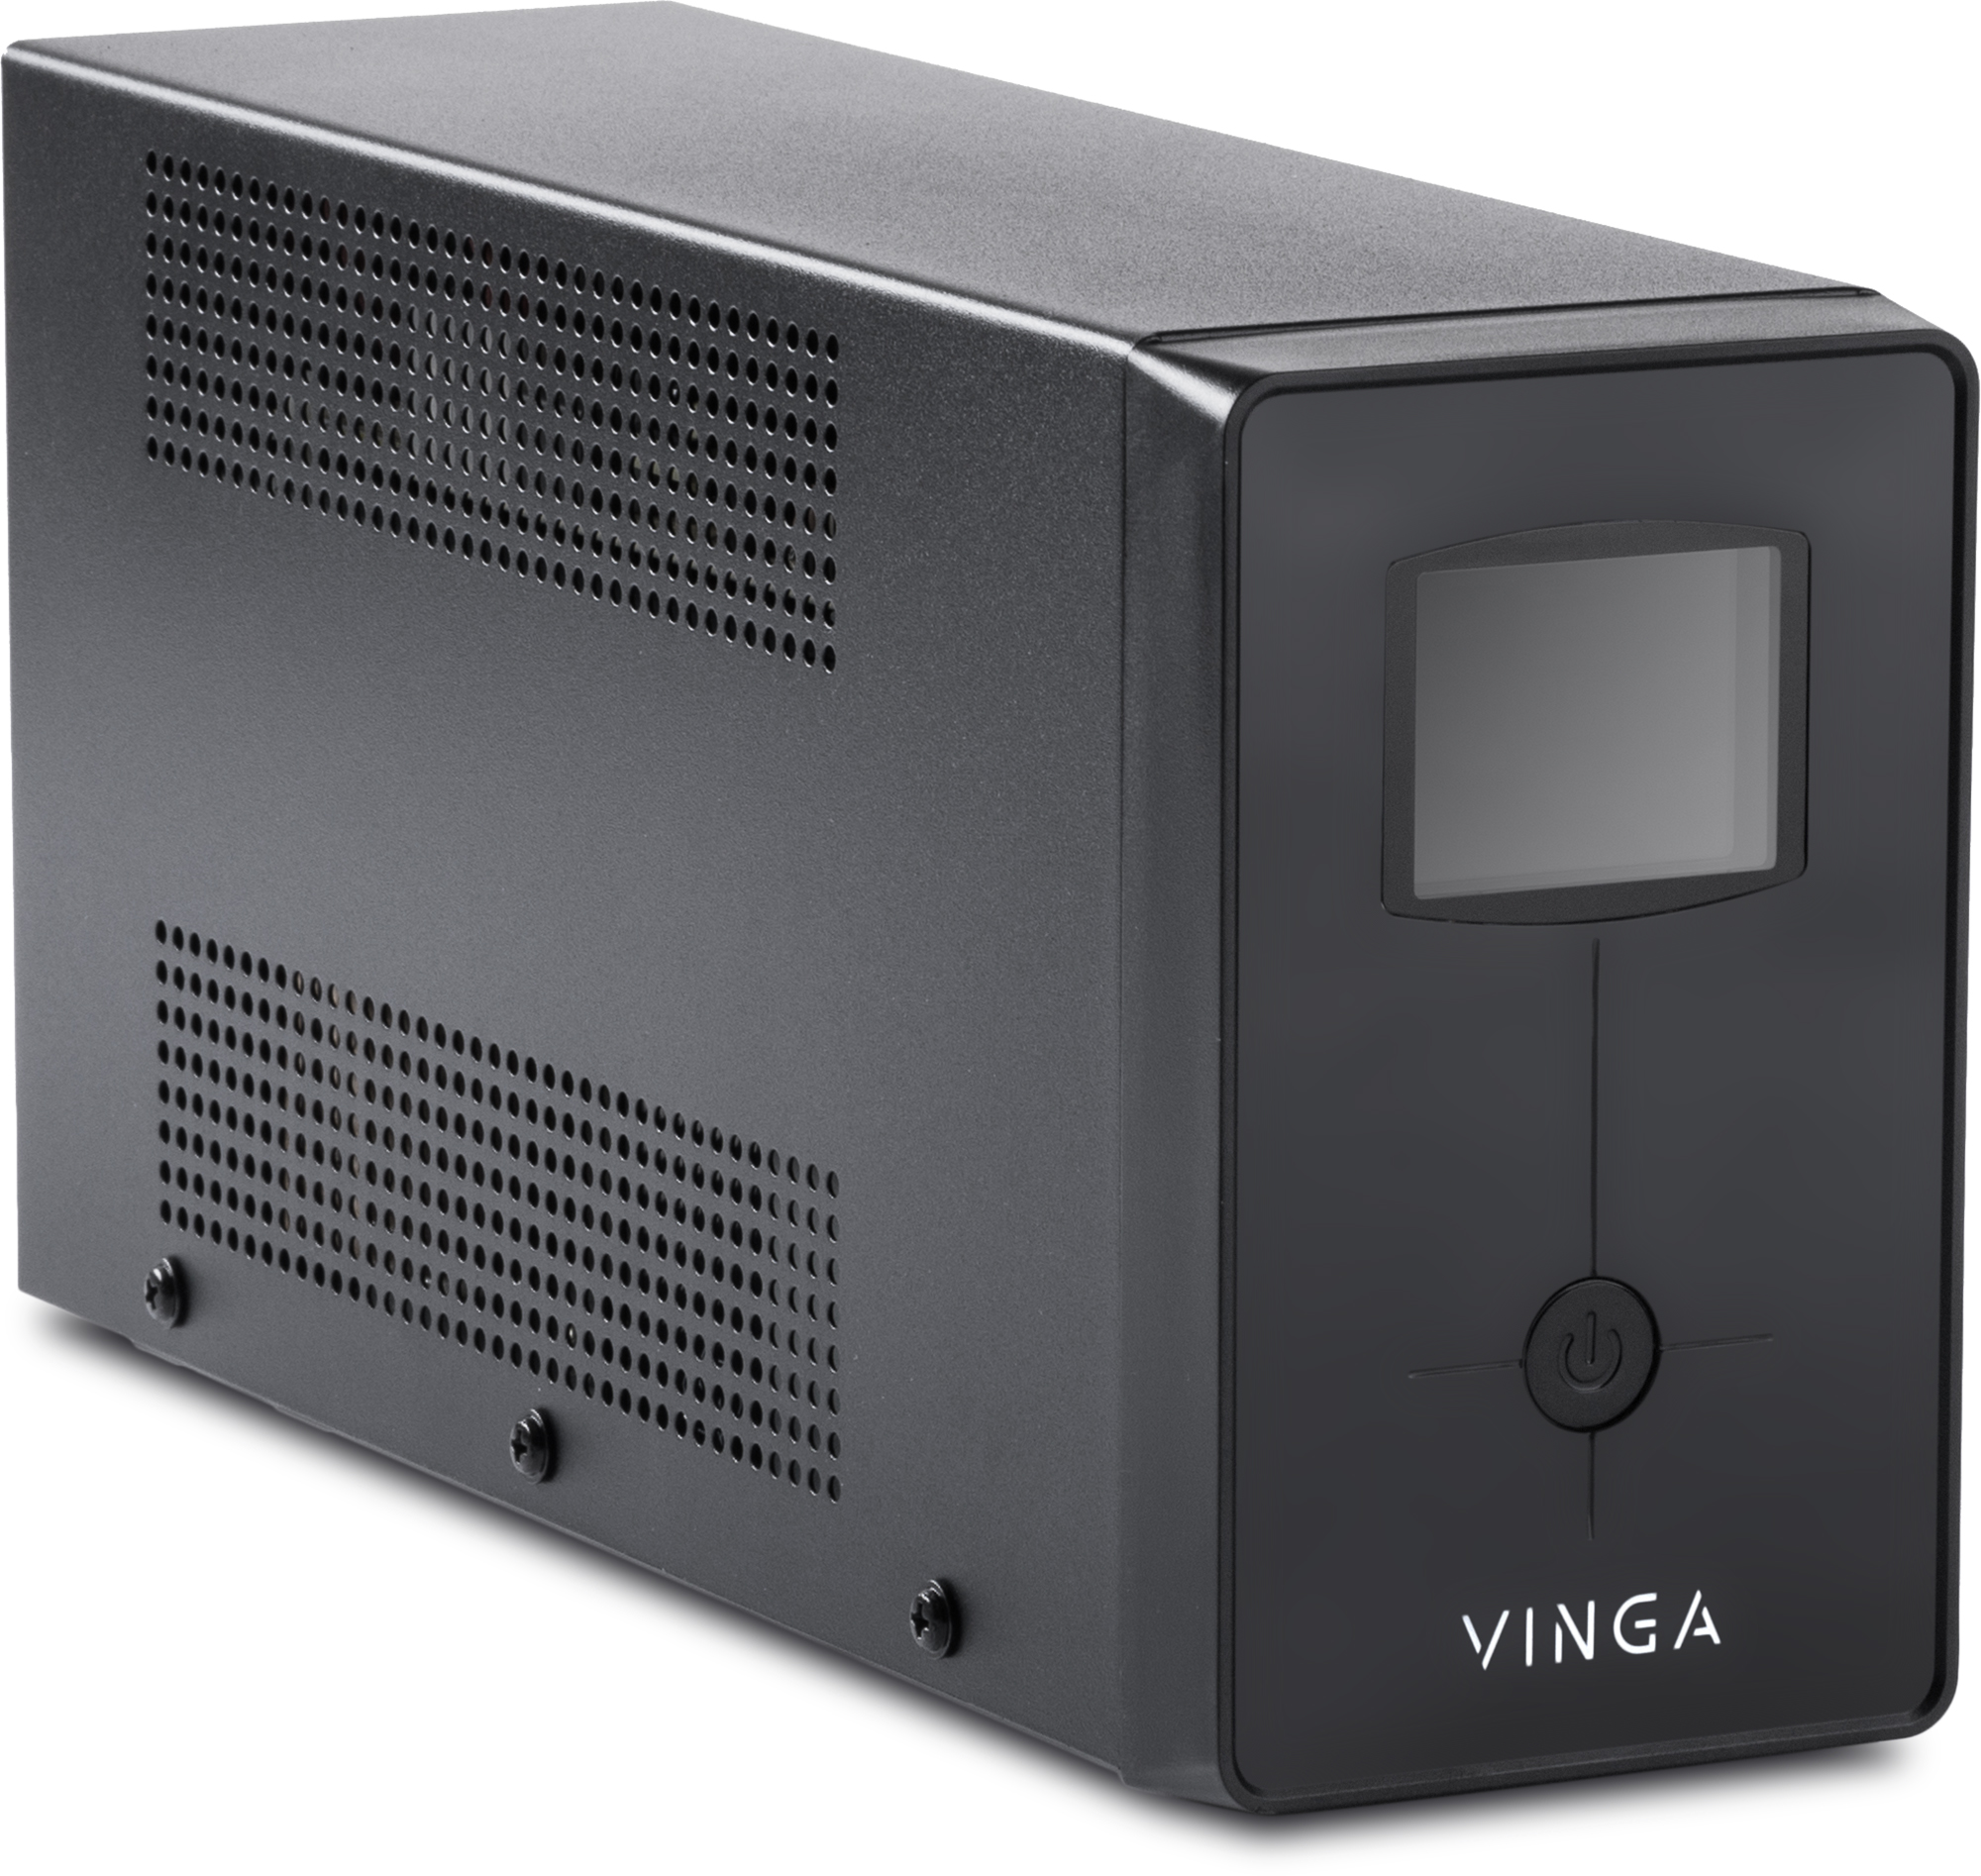 Джерело безперебійного живлення Vinga LCD 600VA (VPC-600M) характеристики - фотографія 7